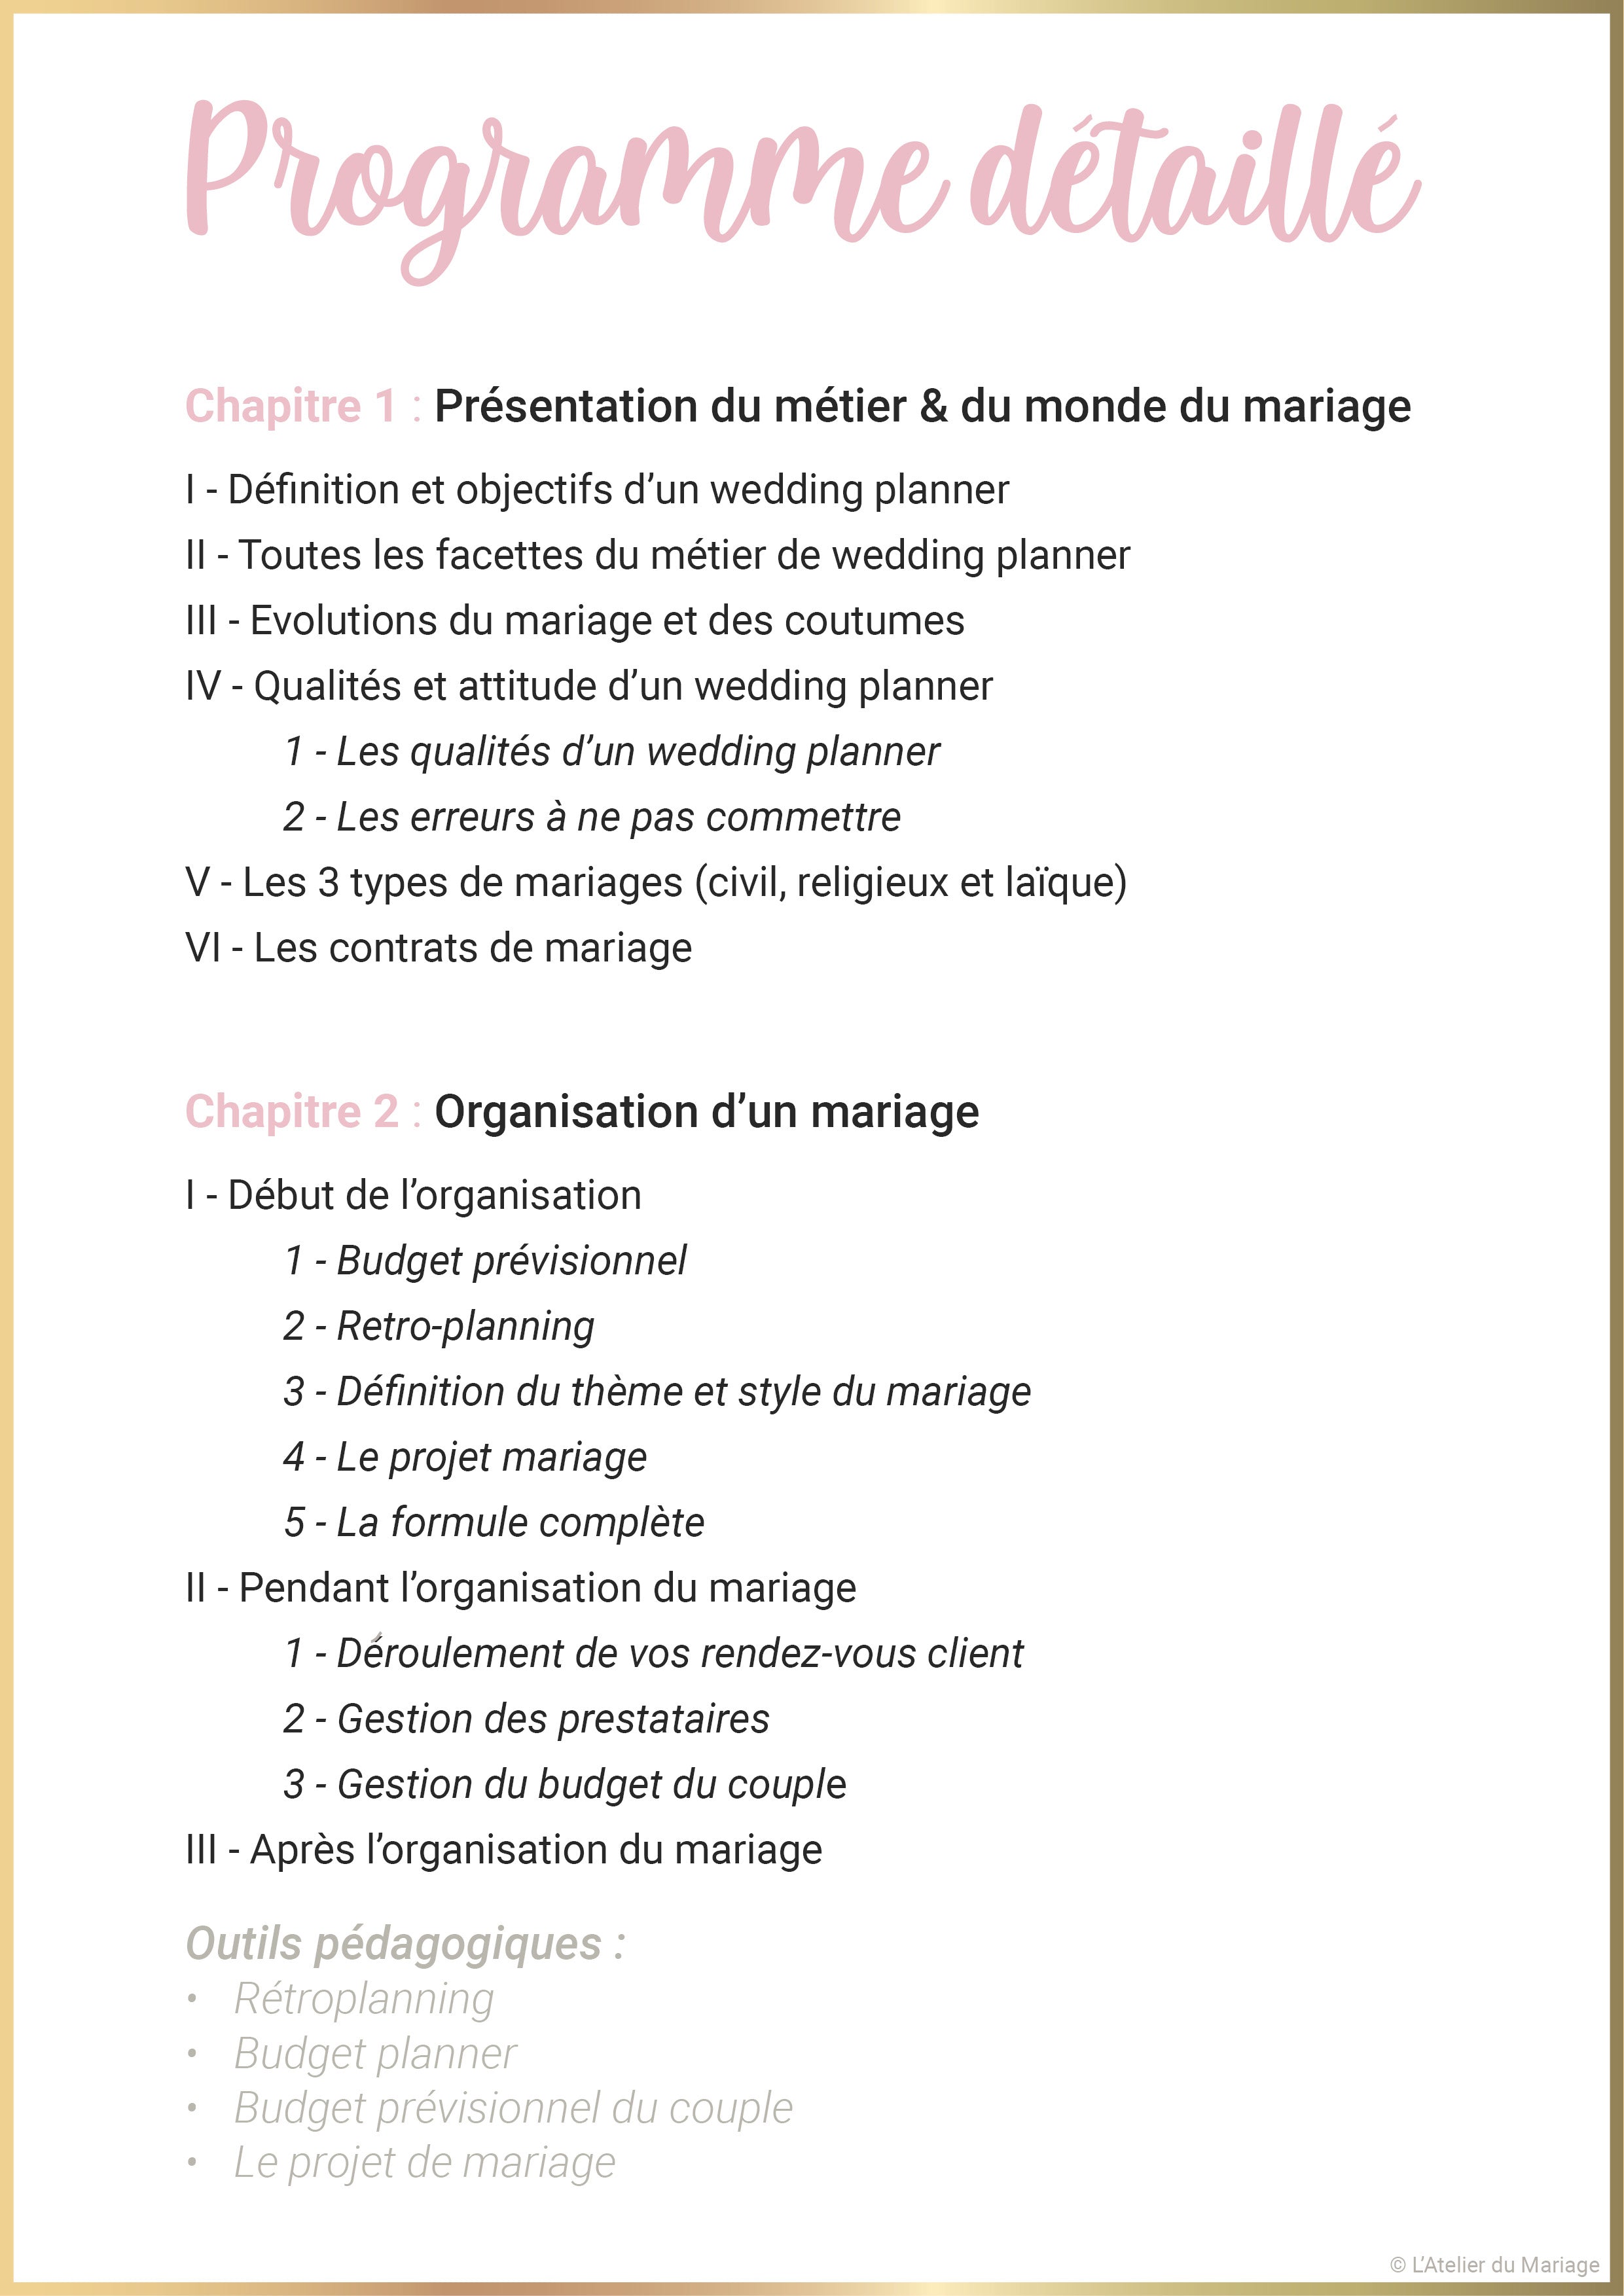 Formation "Organiser un mariage de A à Z"